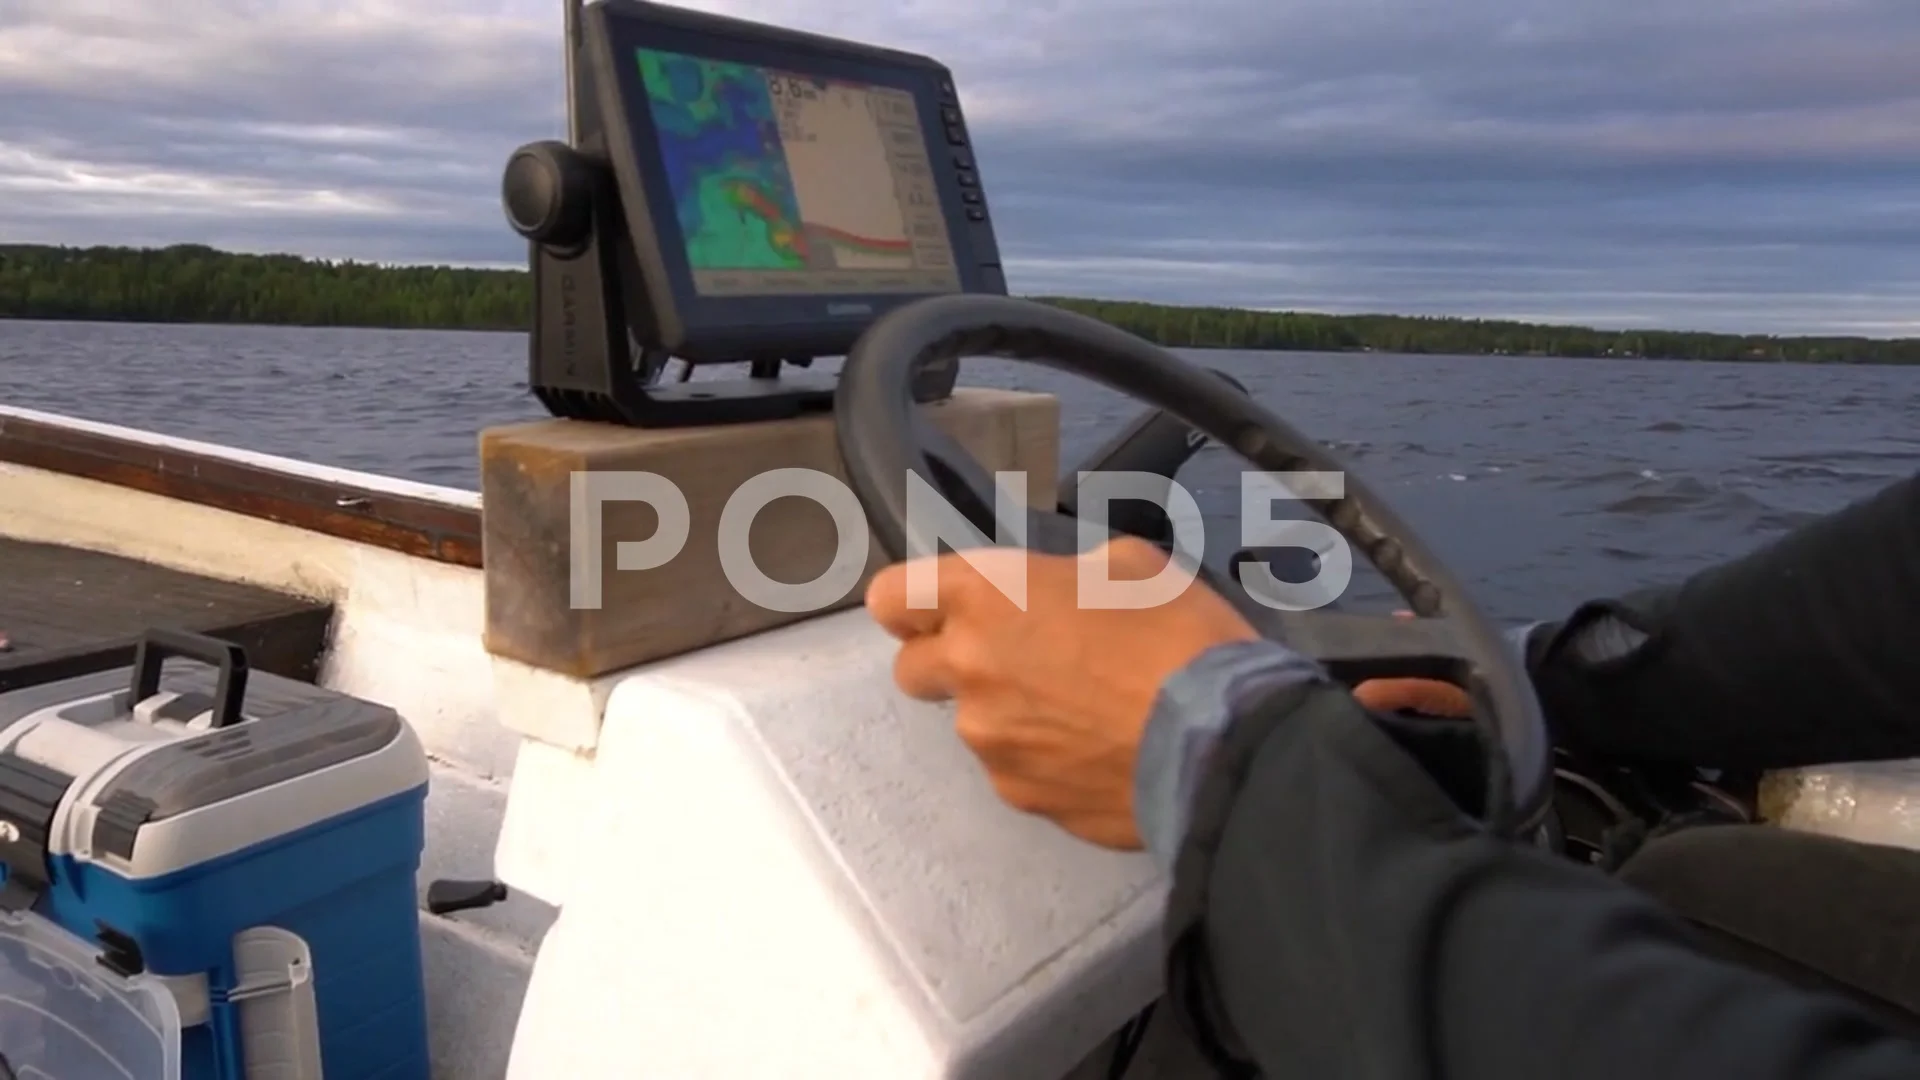 https://images.pond5.com/steering-fishing-boat-sonar-marine-footage-178846453_prevstill.jpeg